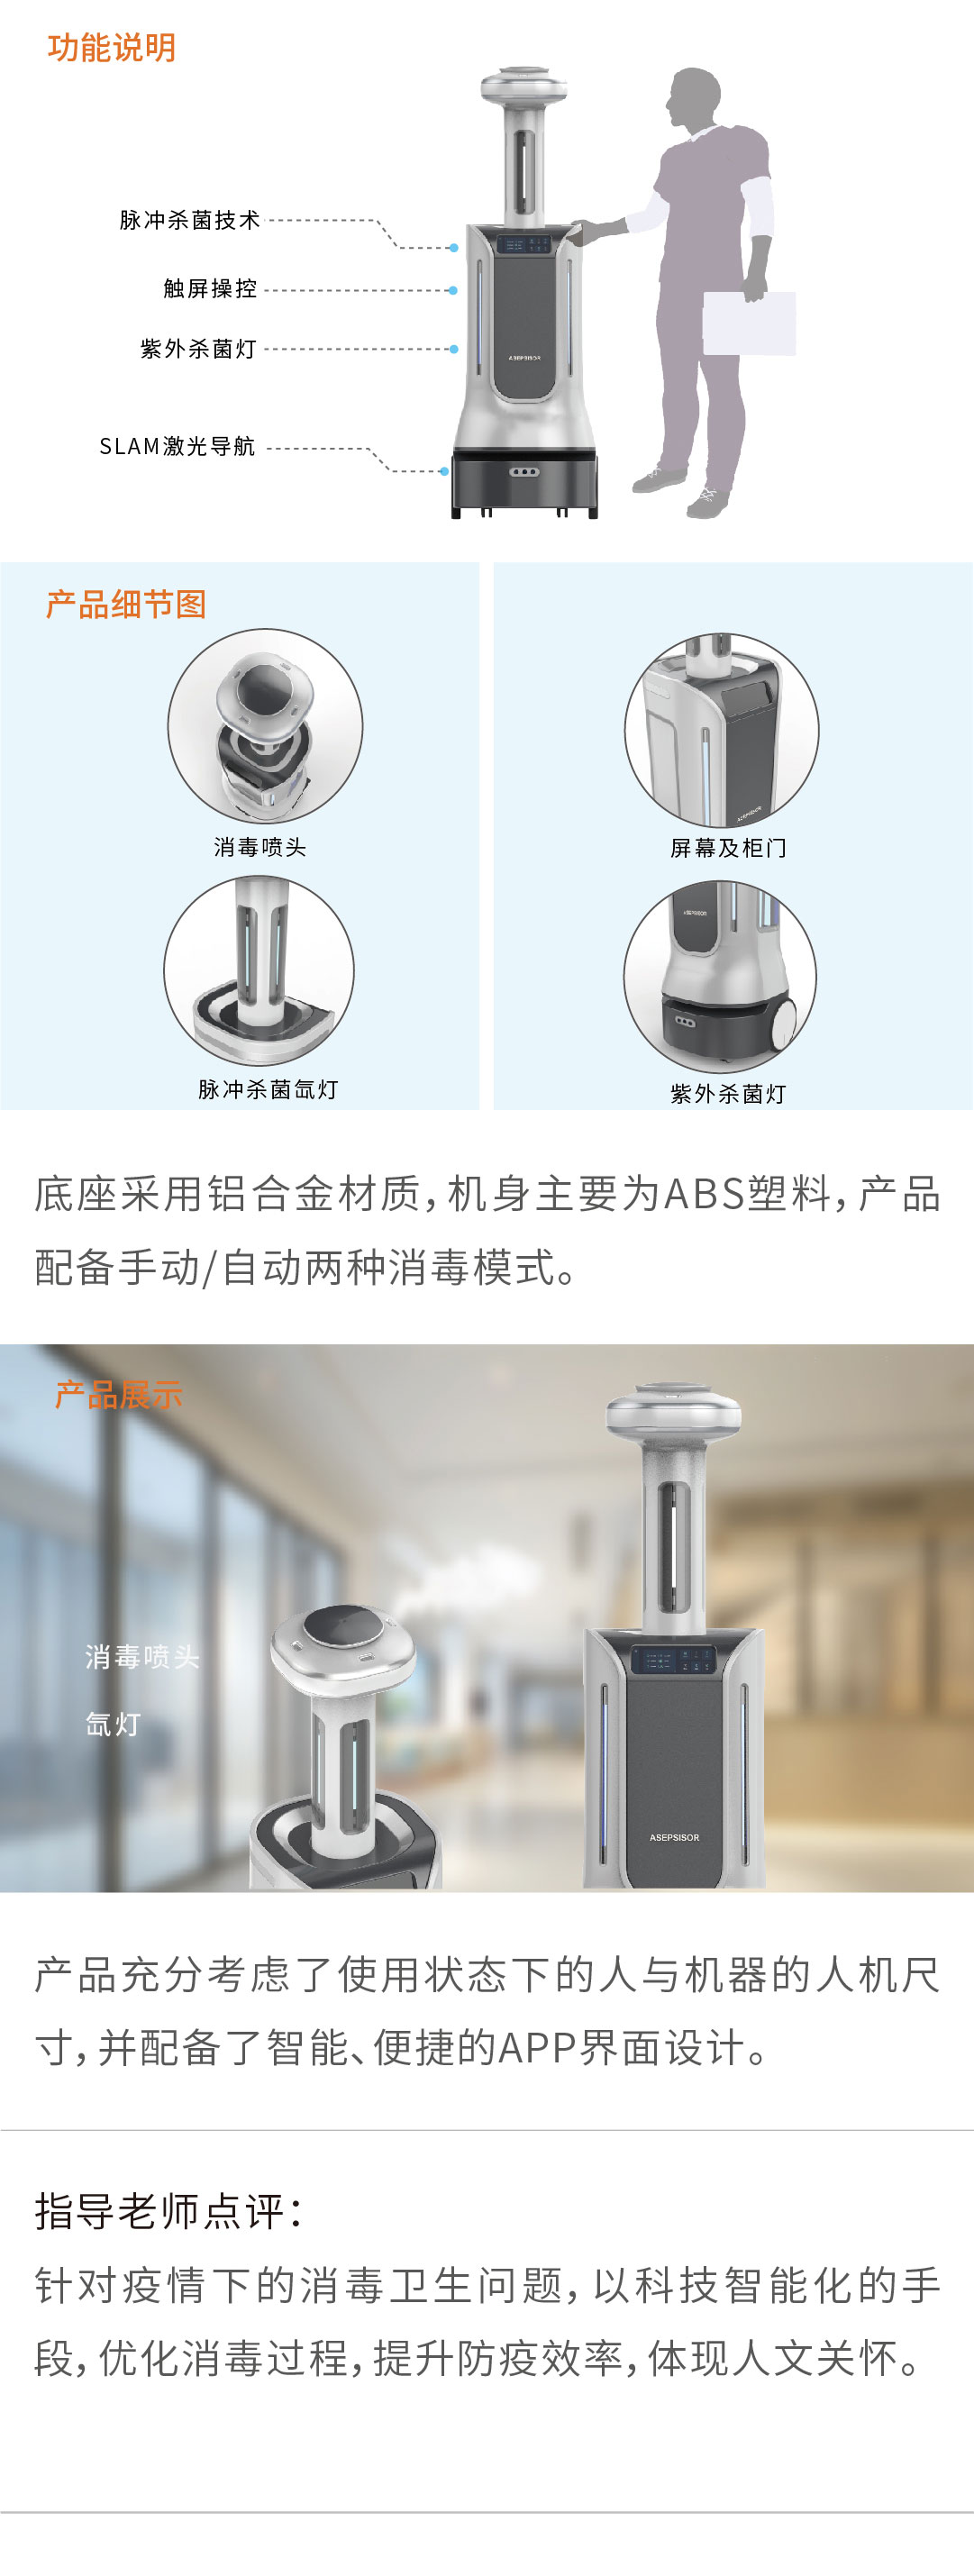 产品设计——医用智能消毒机器人-设计中国